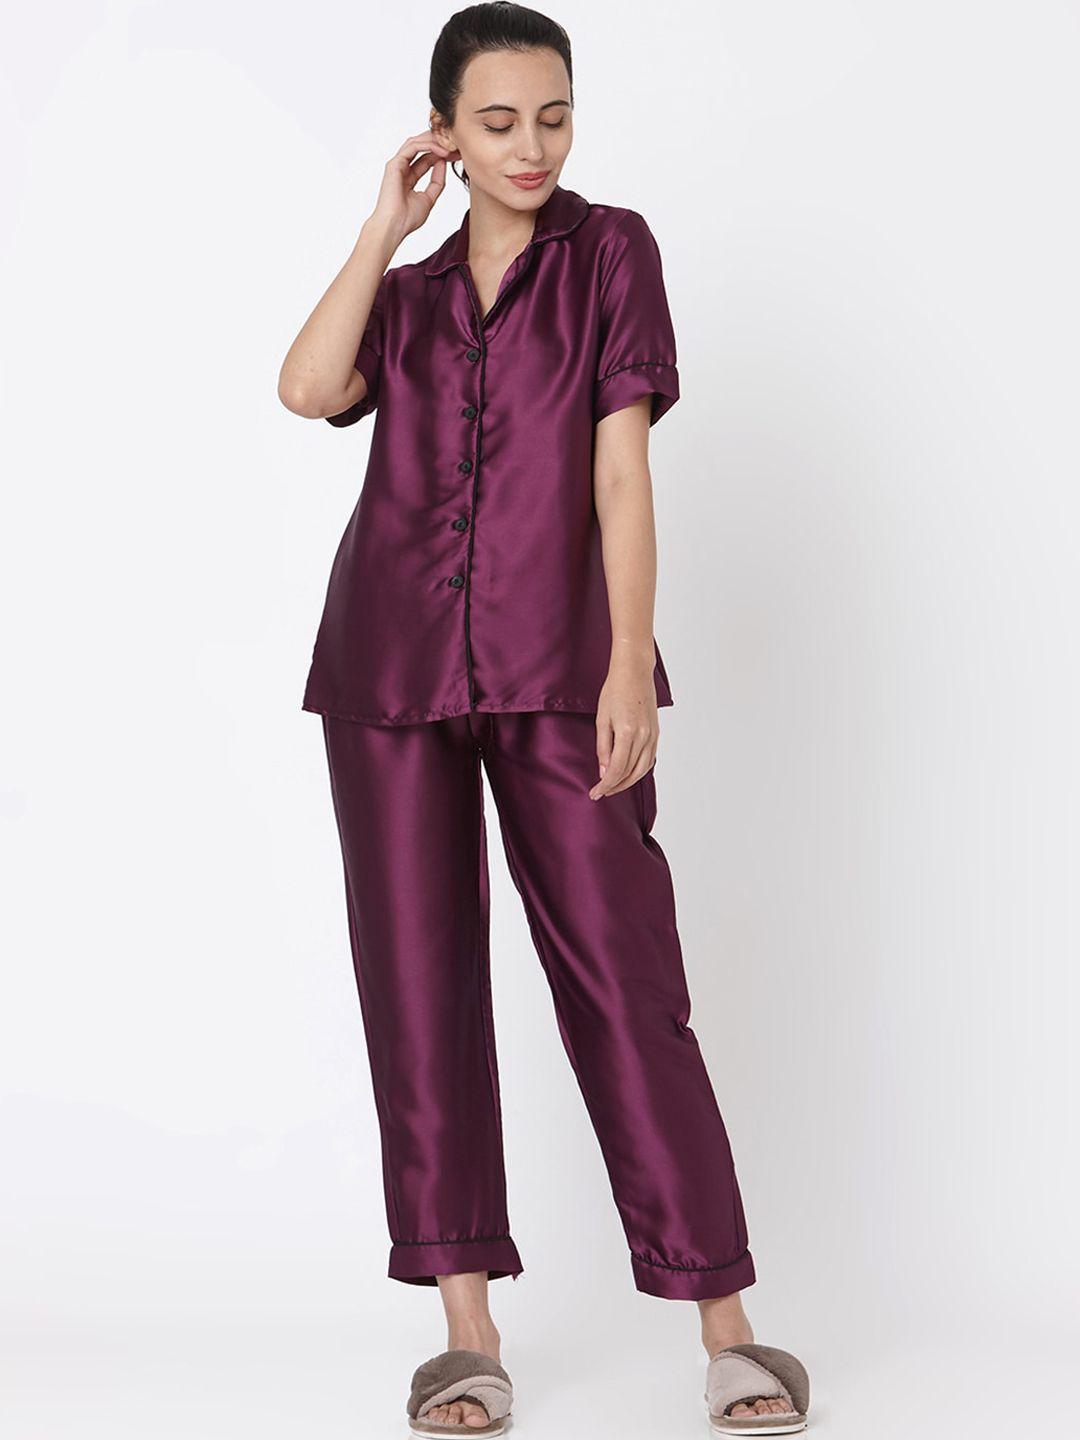 smarty pants women purple night suit